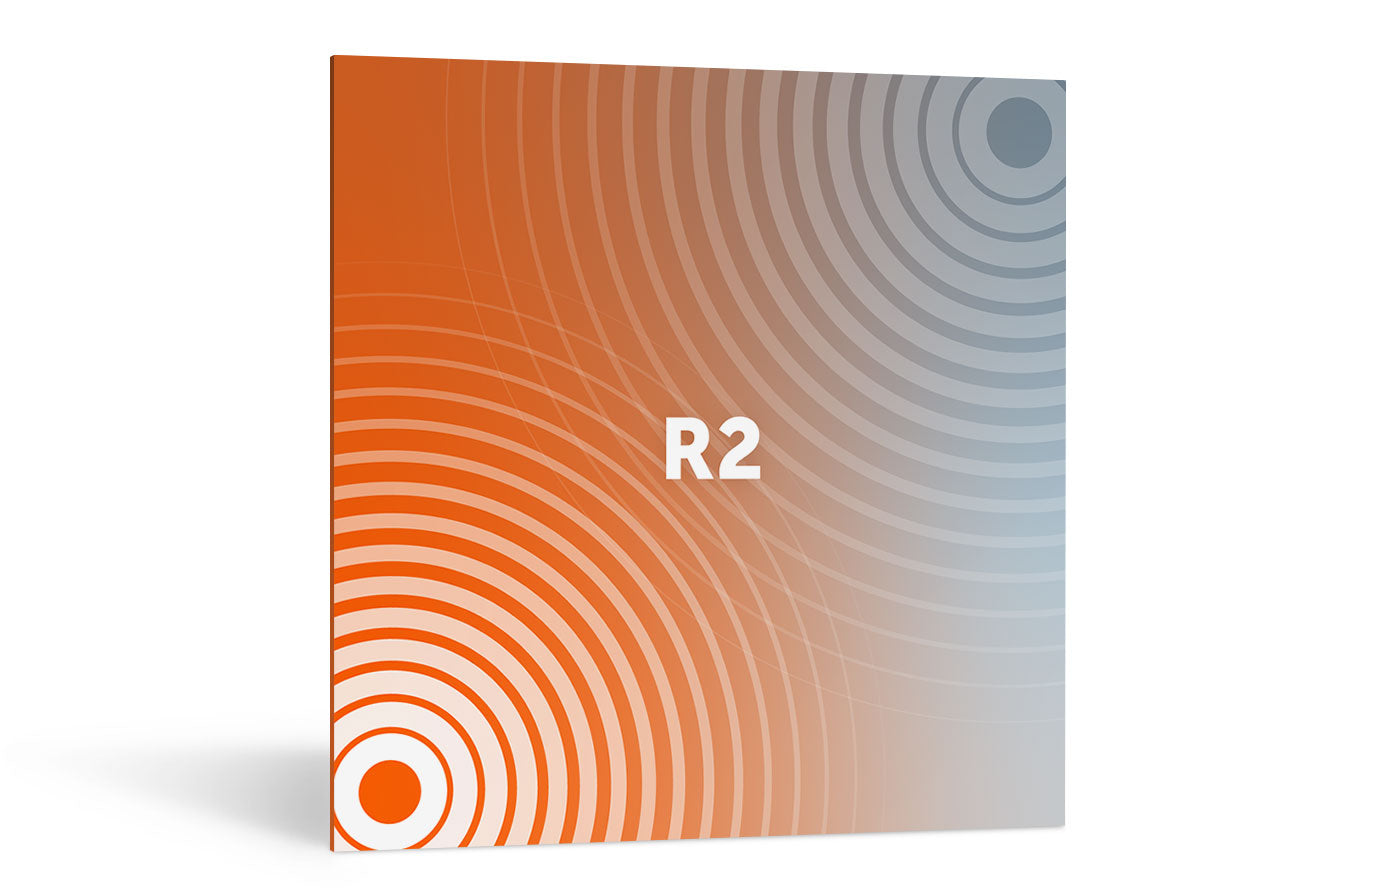 iZotope | Exponential Audio: R2